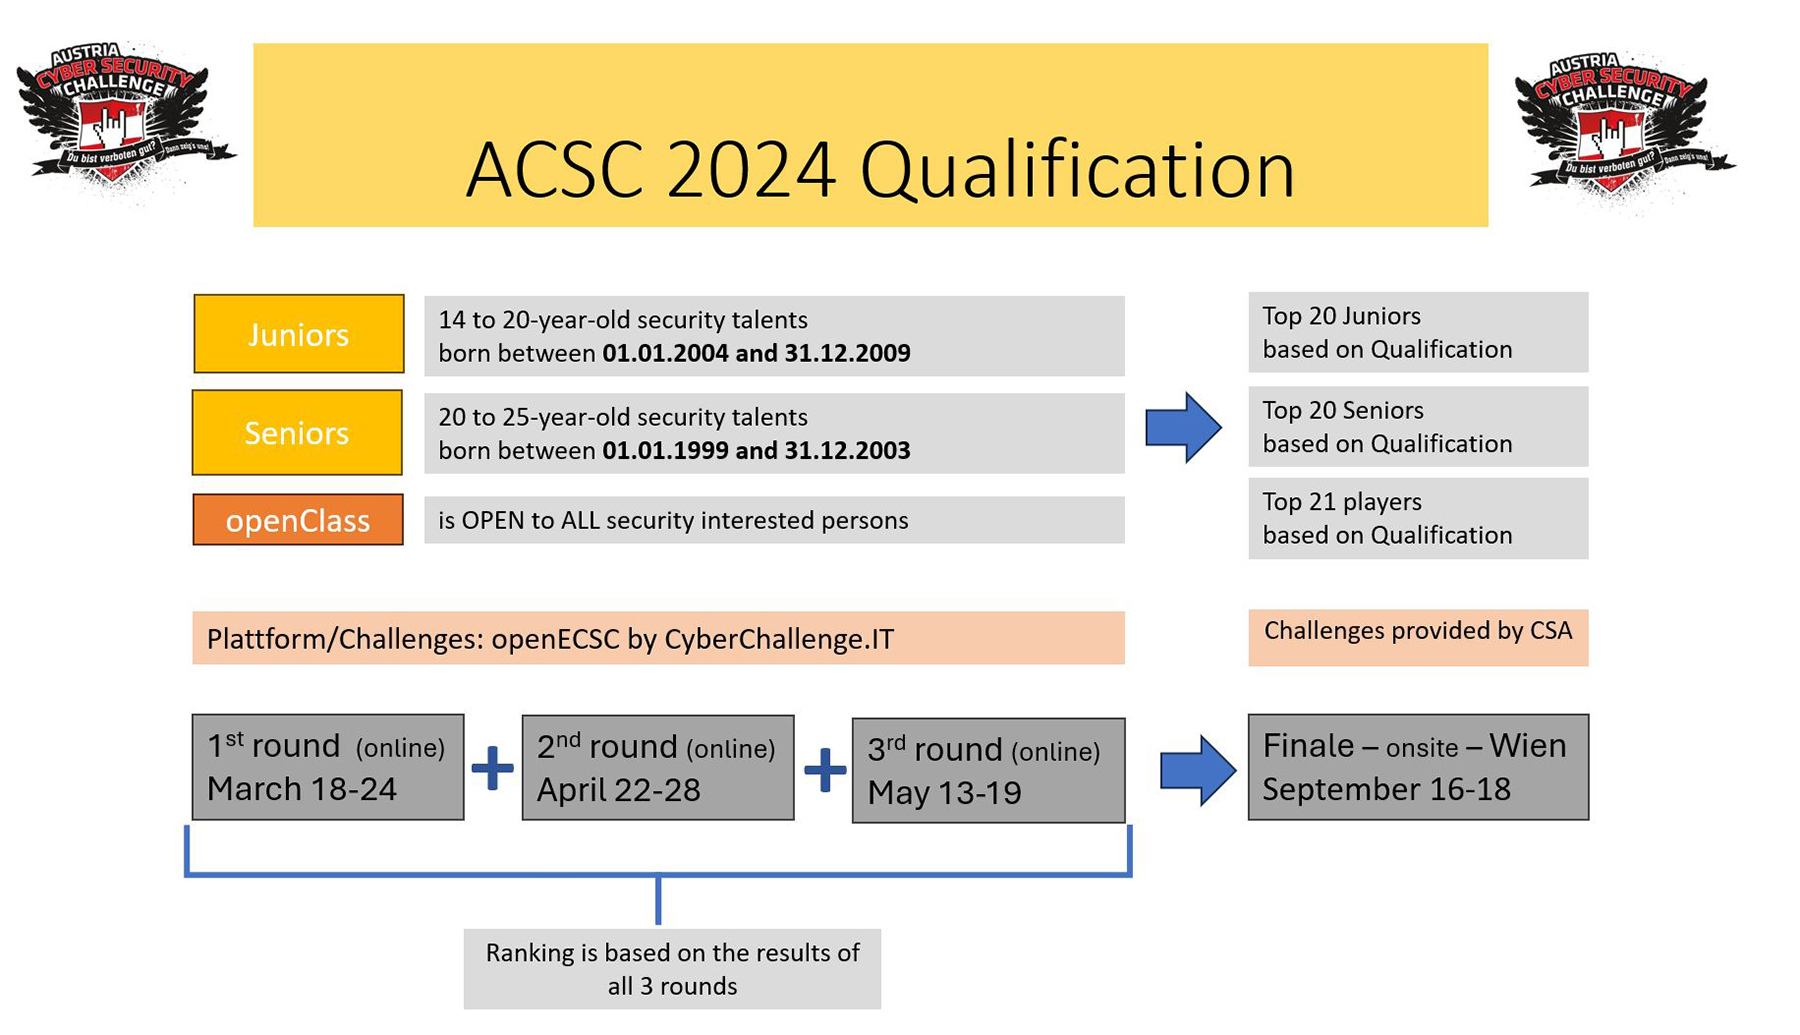 ACSC 2024 Qualification